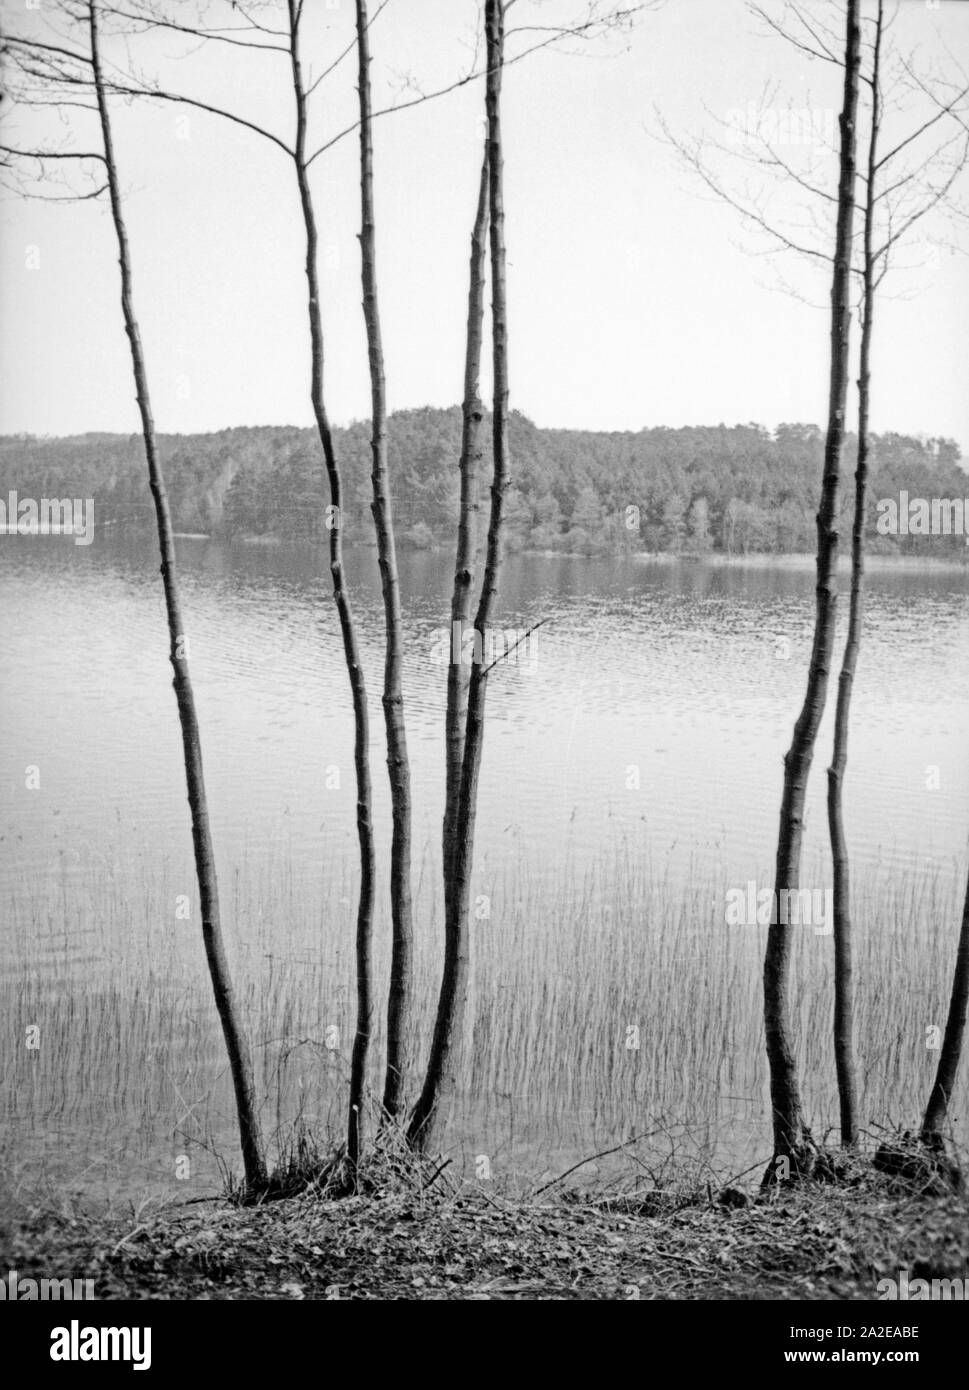 Landschaft in der Gegend um Treuburg in Masuren, Ostpreußen, 1930er Jahre. Landscape around Treuburg in Masuria, East Prussia, 1930s. Stock Photo